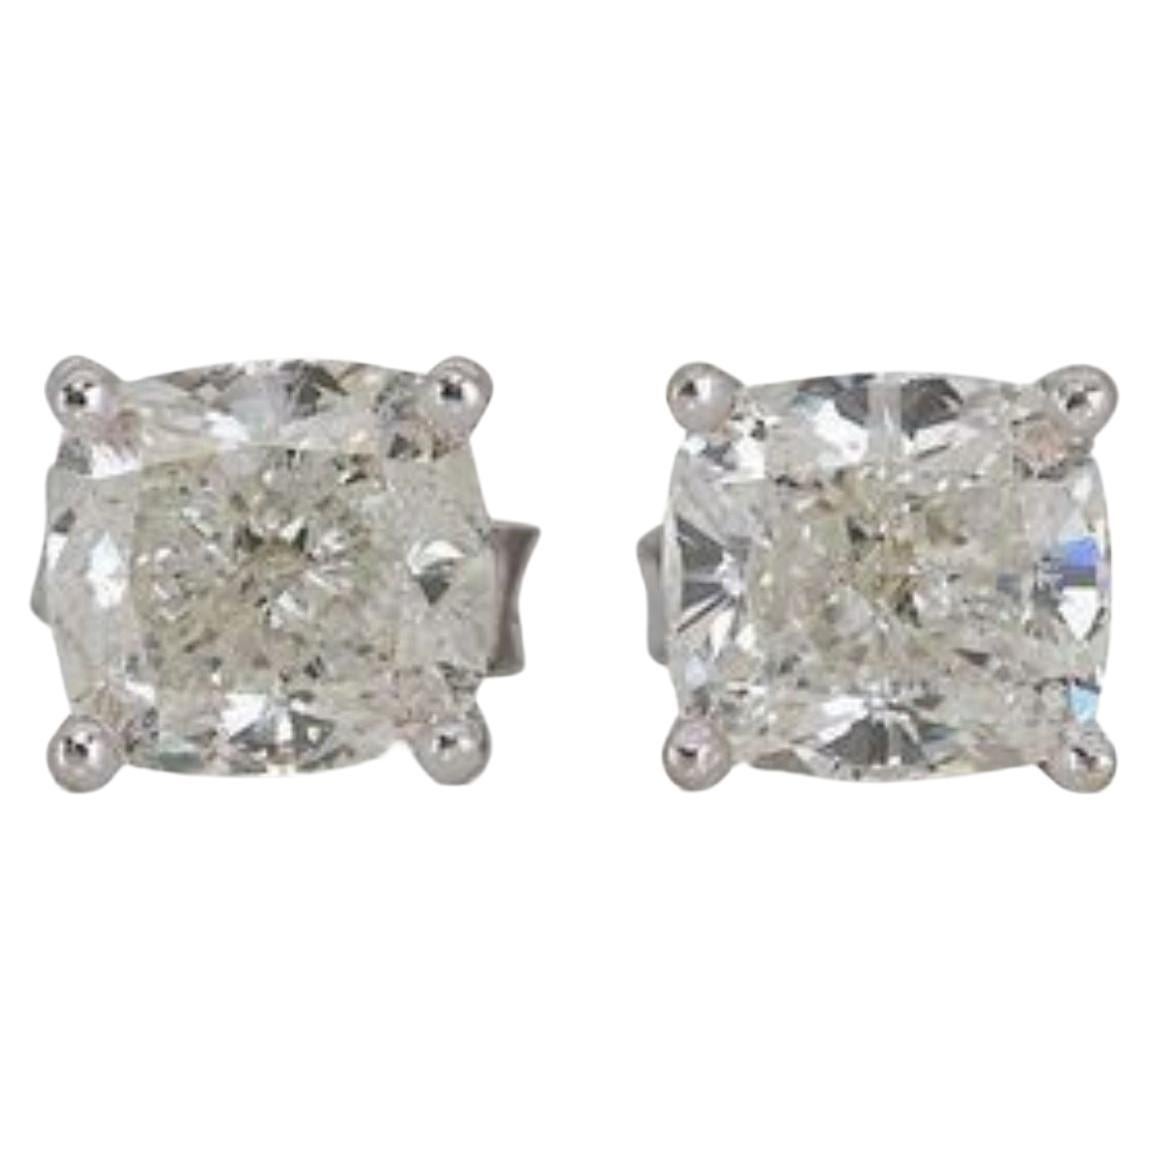 Elegant 2.07ct Solitaire Diamond Earring set in 18K White Gold